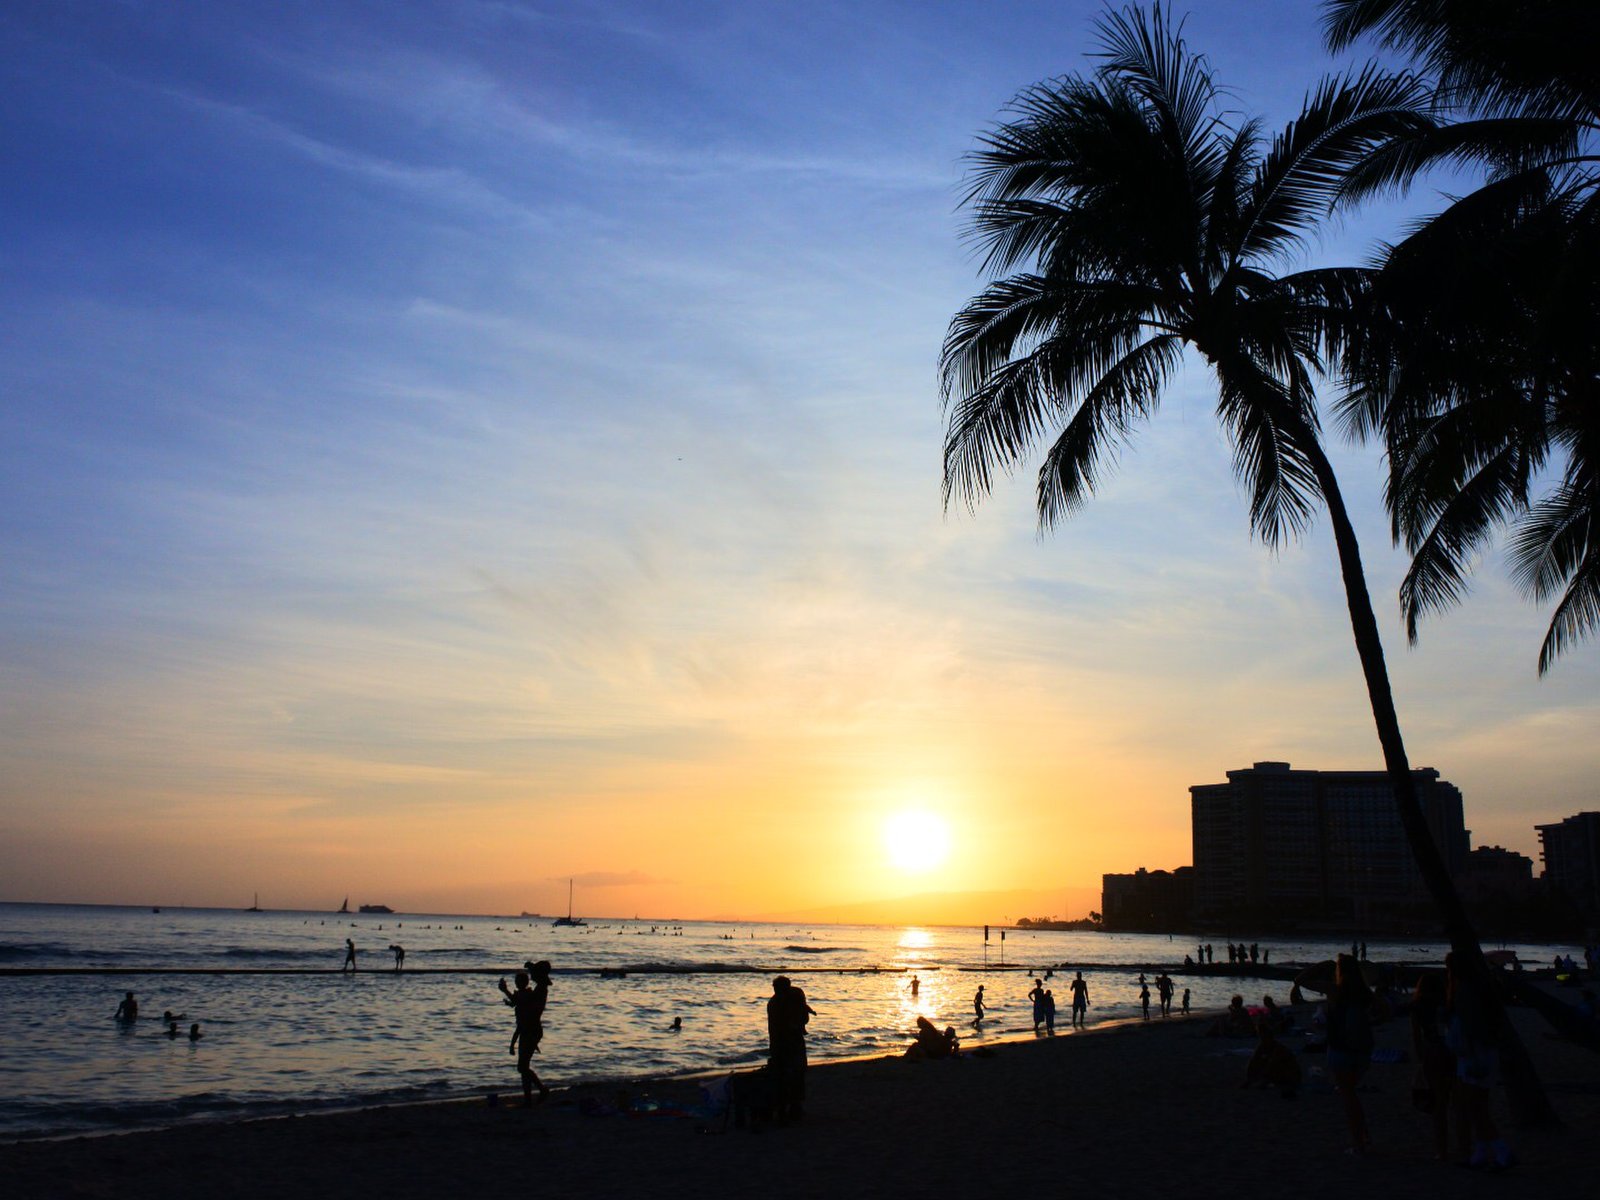 Waikiki sunset on the beach